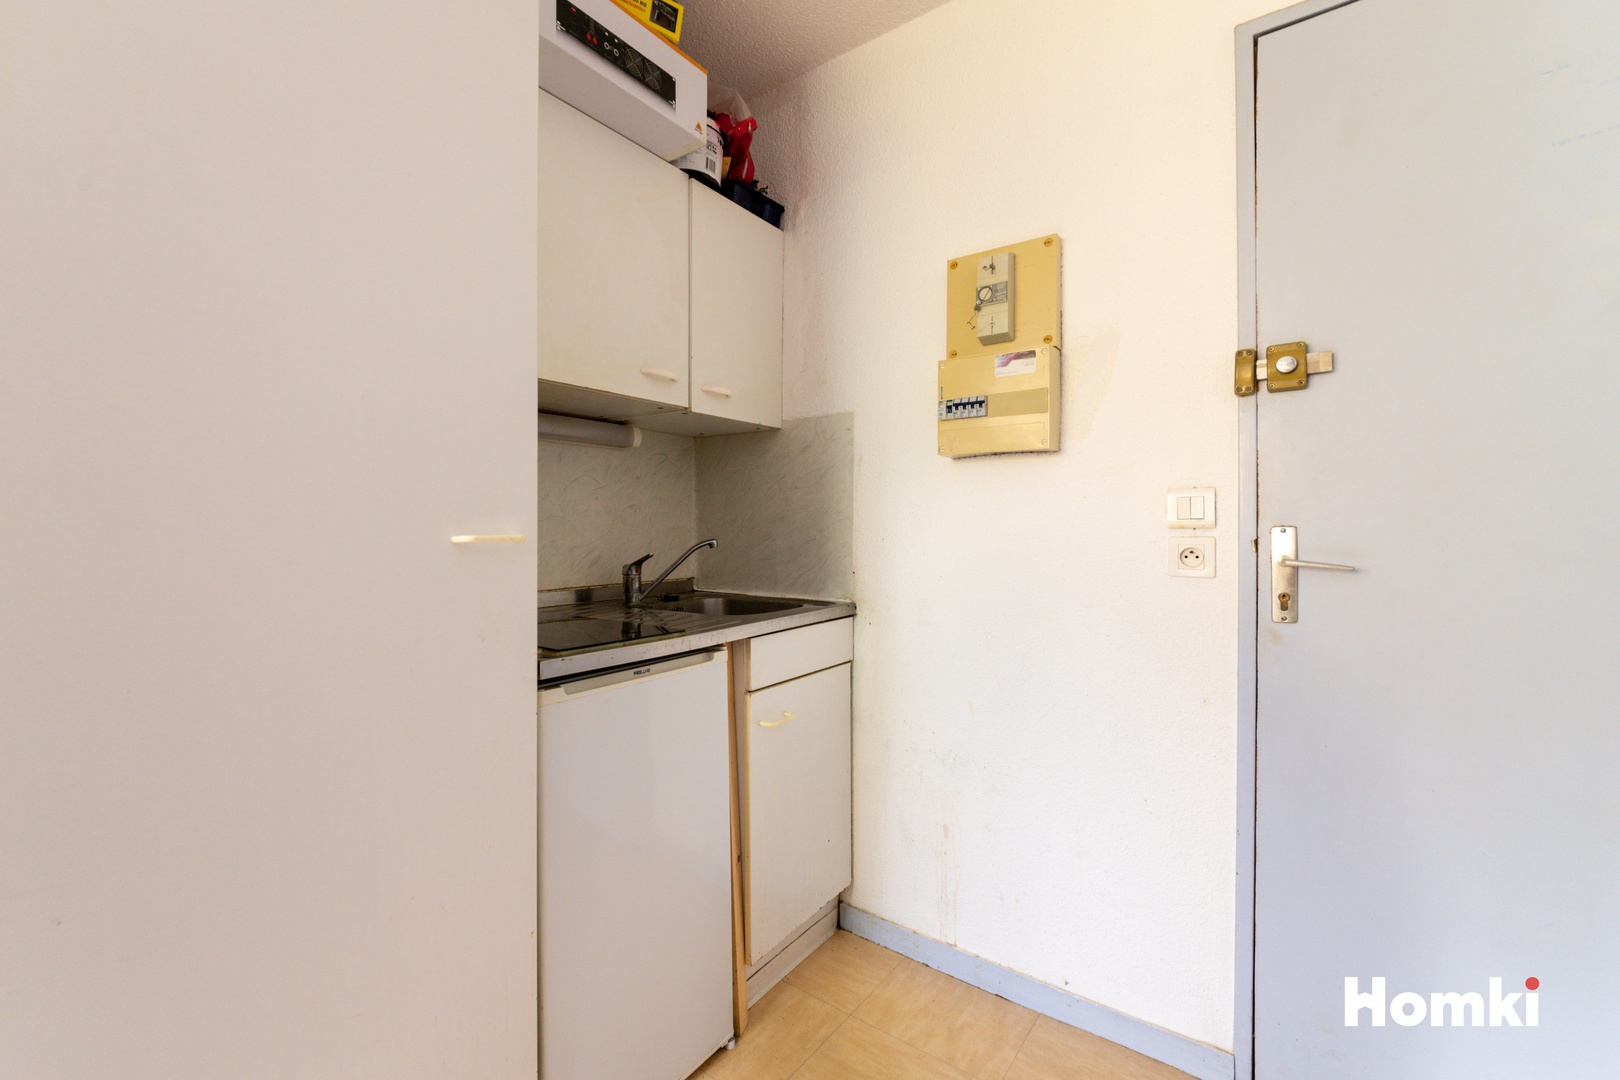 Homki - Vente Appartement  de 25.0 m² à Montpellier 34090